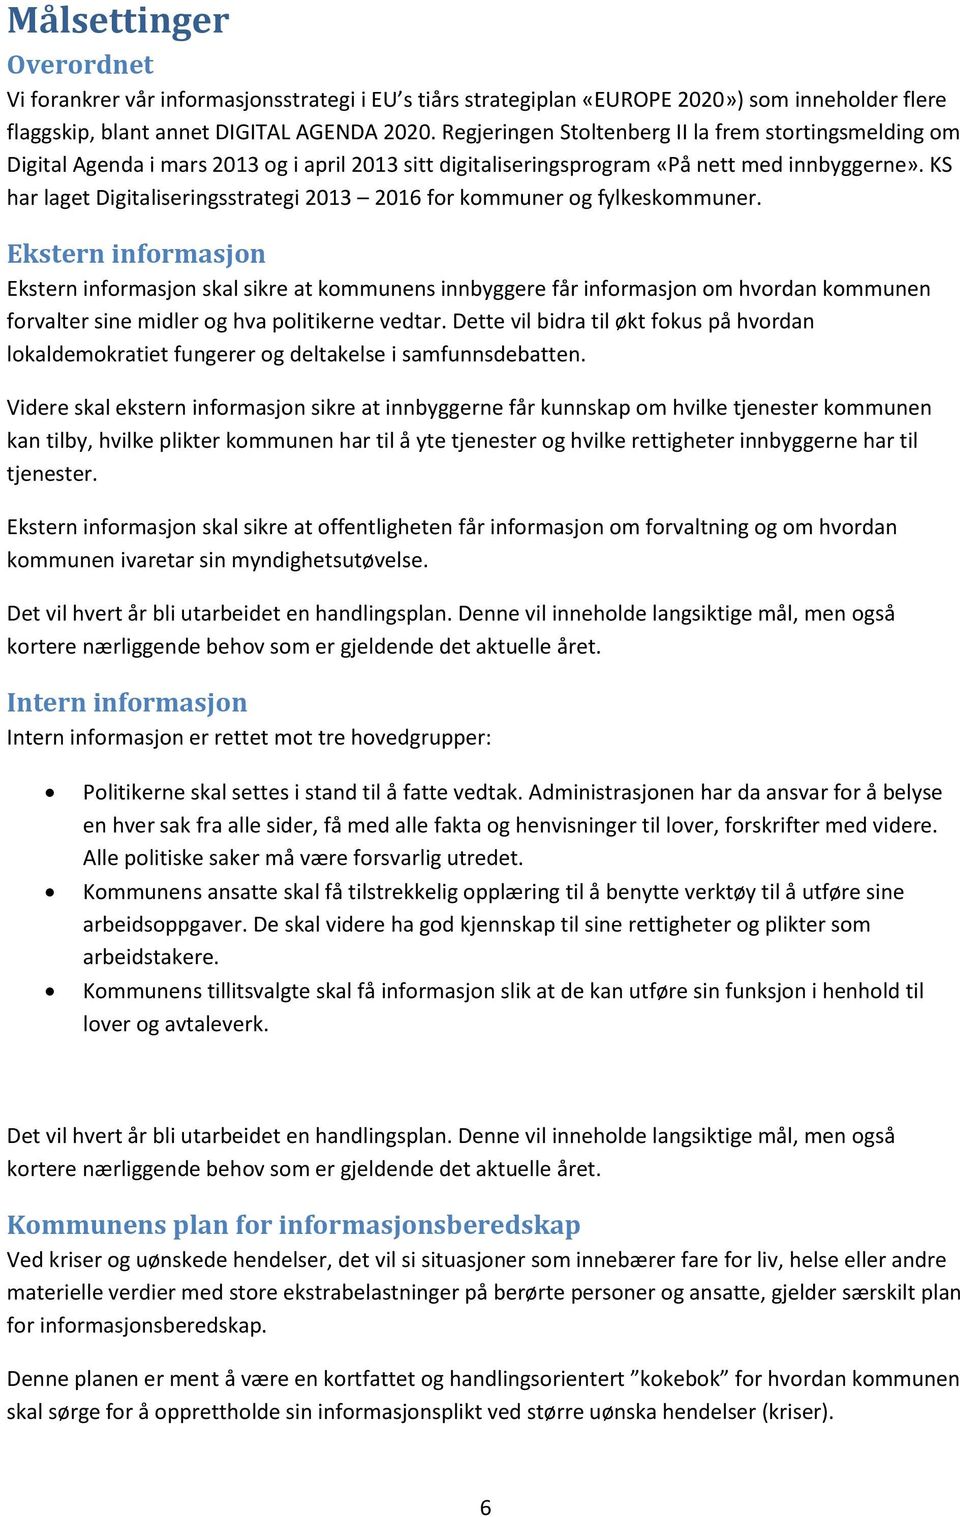 KS har laget Digitaliseringsstrategi 2013 2016 for kommuner og fylkeskommuner.